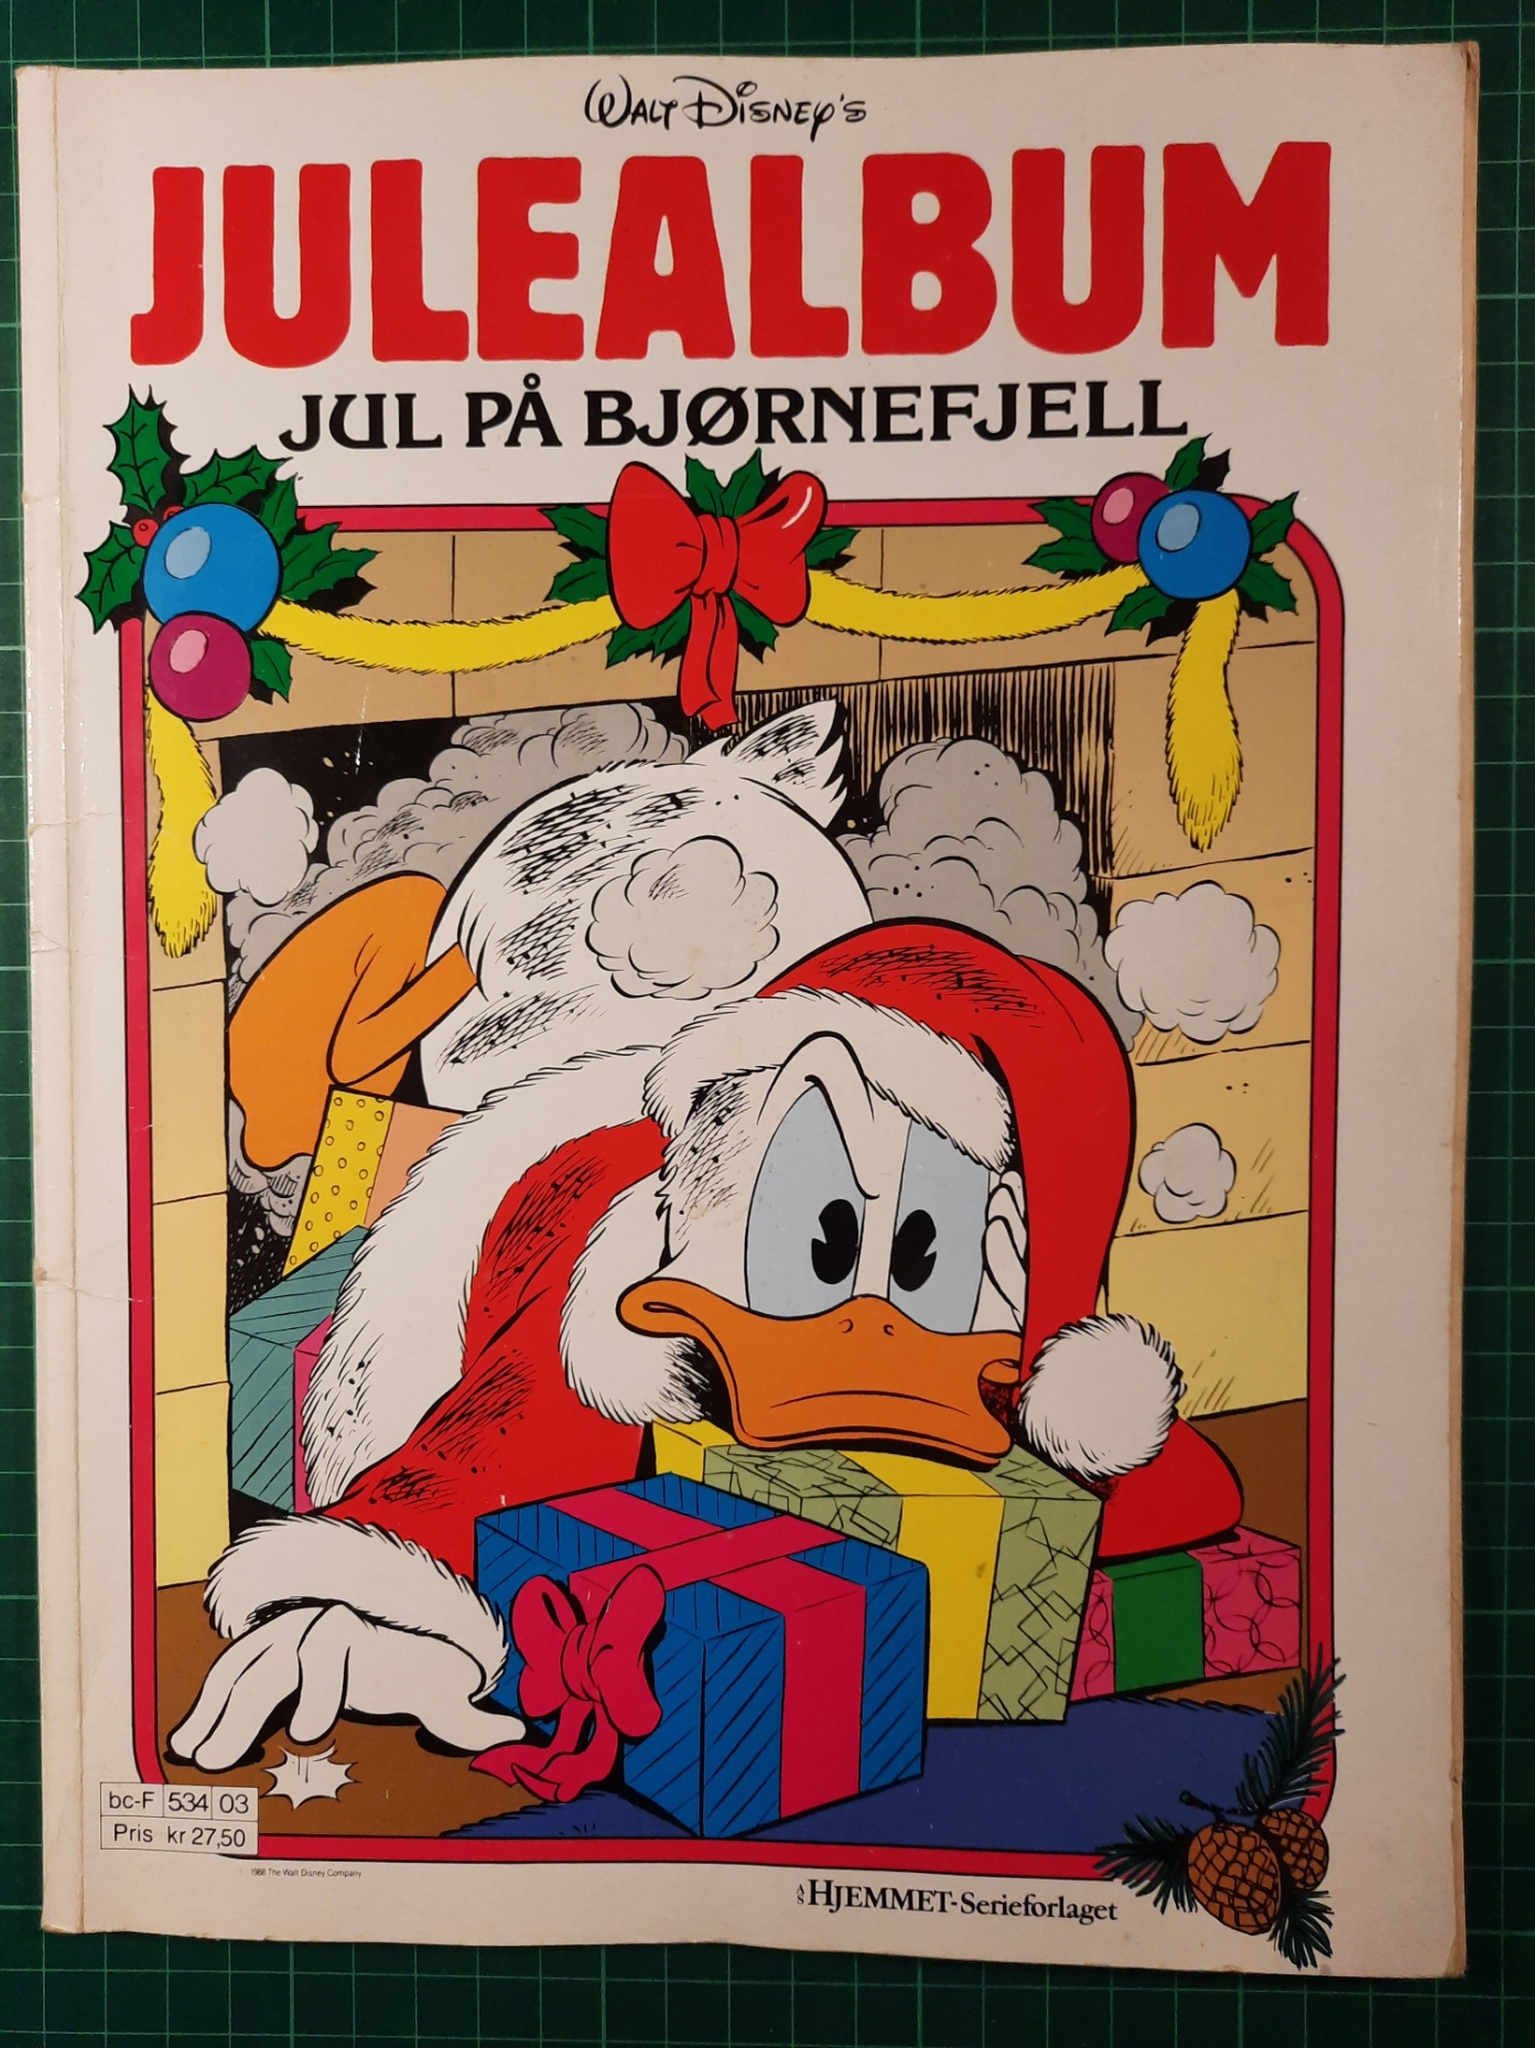 Walt Disney julealbum 1988 Jul på Bjørnefjell